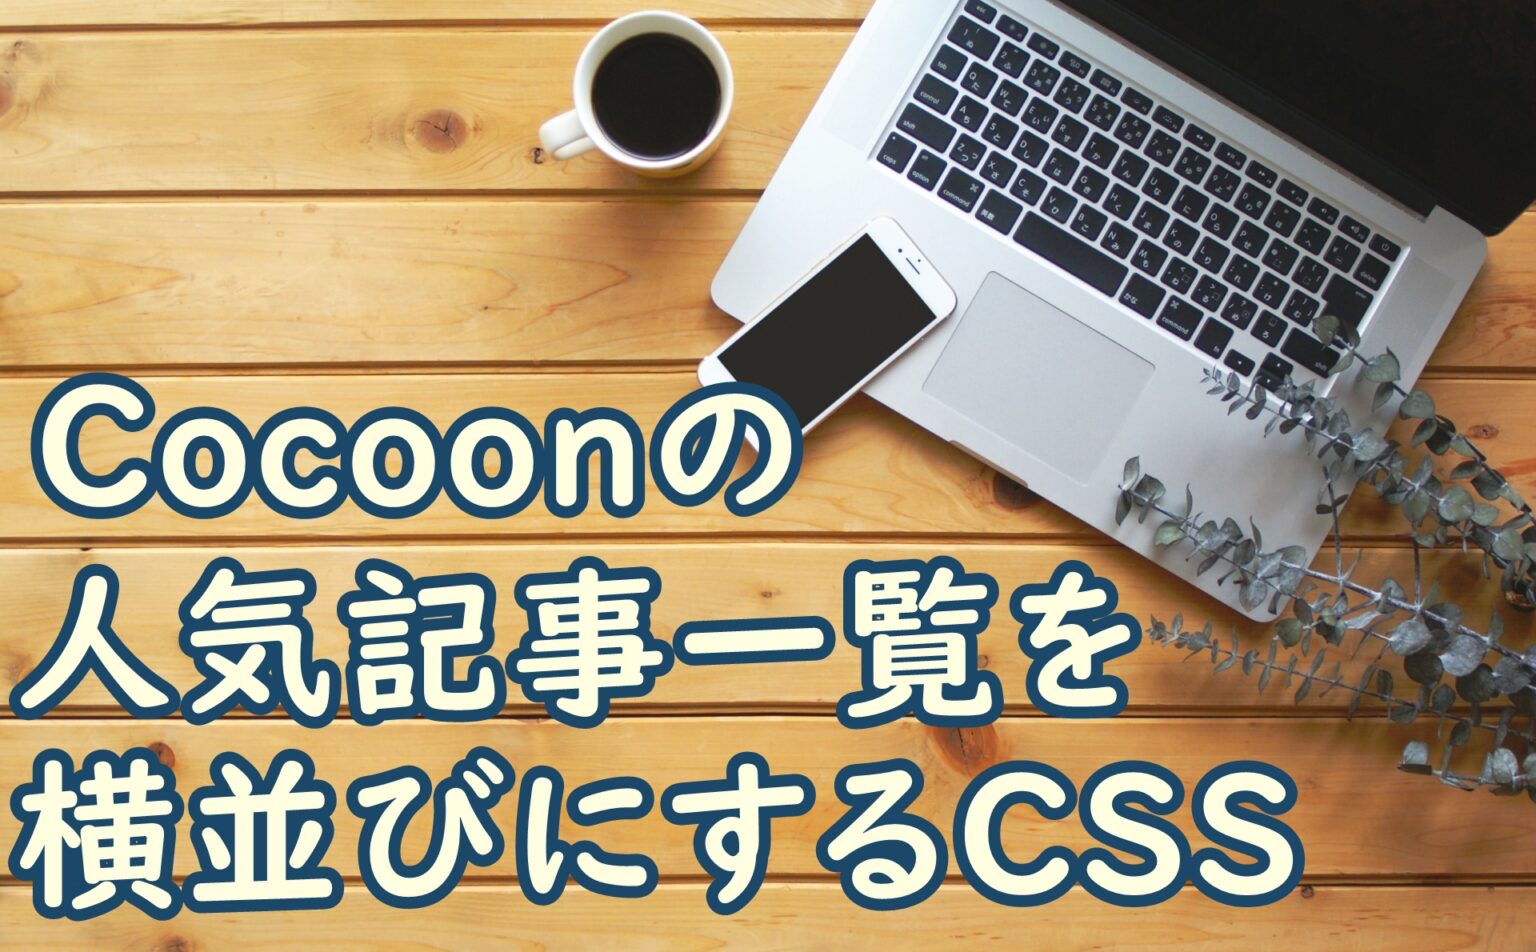 Cocoon_横並び